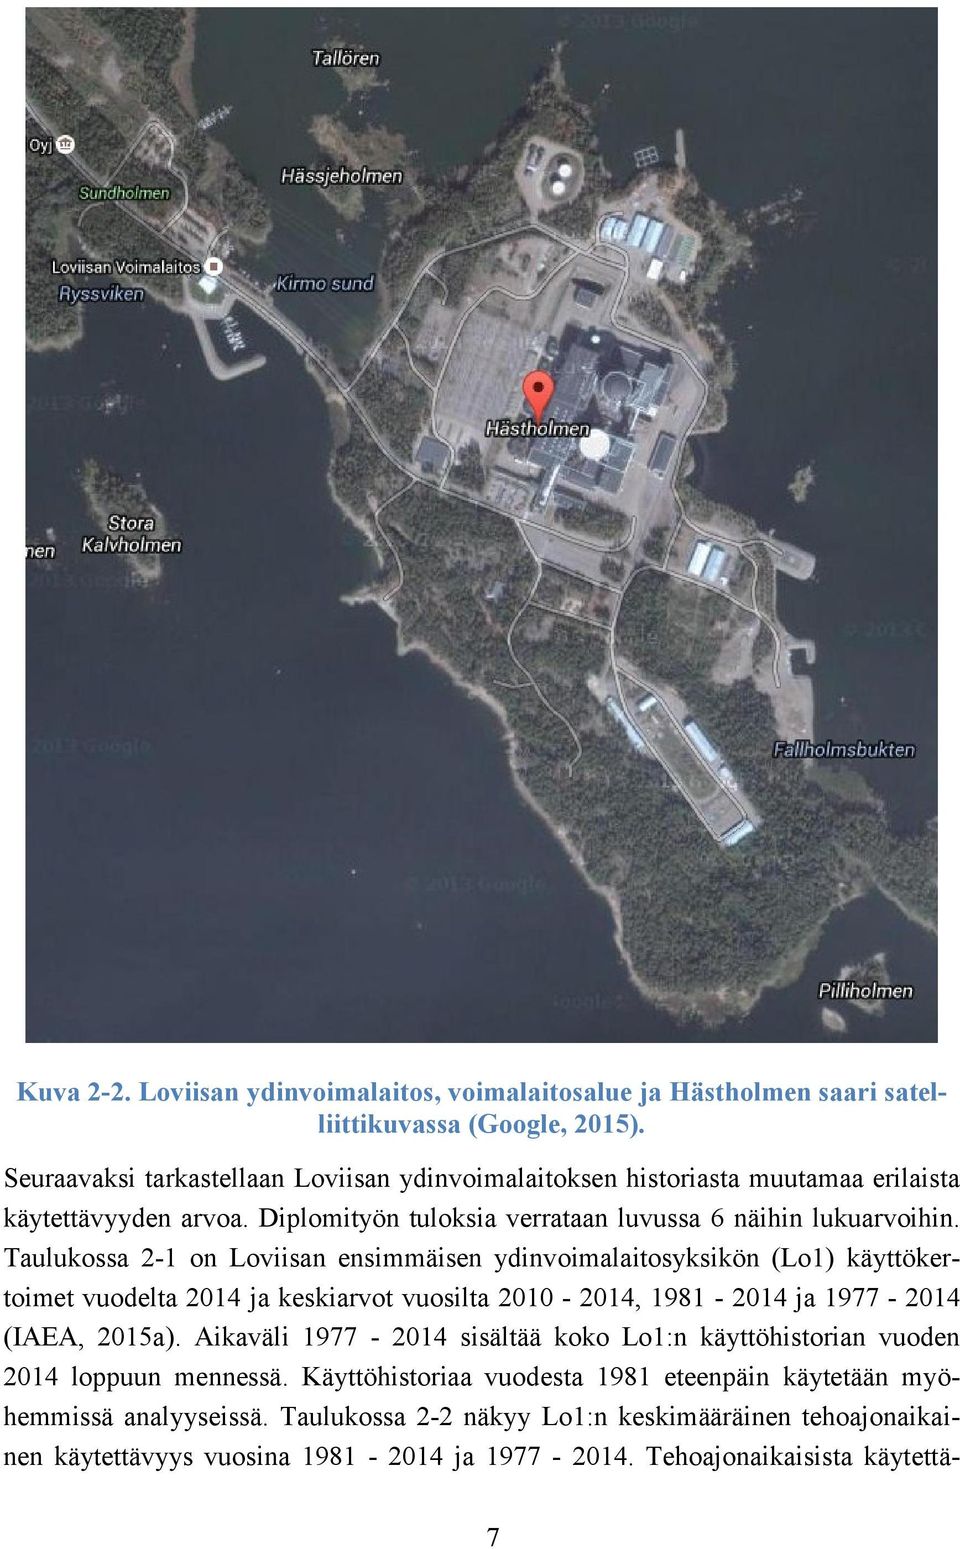 Taulukossa 2-1 on Loviisan ensimmäisen ydinvoimalaitosyksikön (Lo1) käyttökertoimet vuodelta 2014 ja keskiarvot vuosilta 2010-2014, 1981-2014 ja 1977-2014 (IAEA, 2015a).